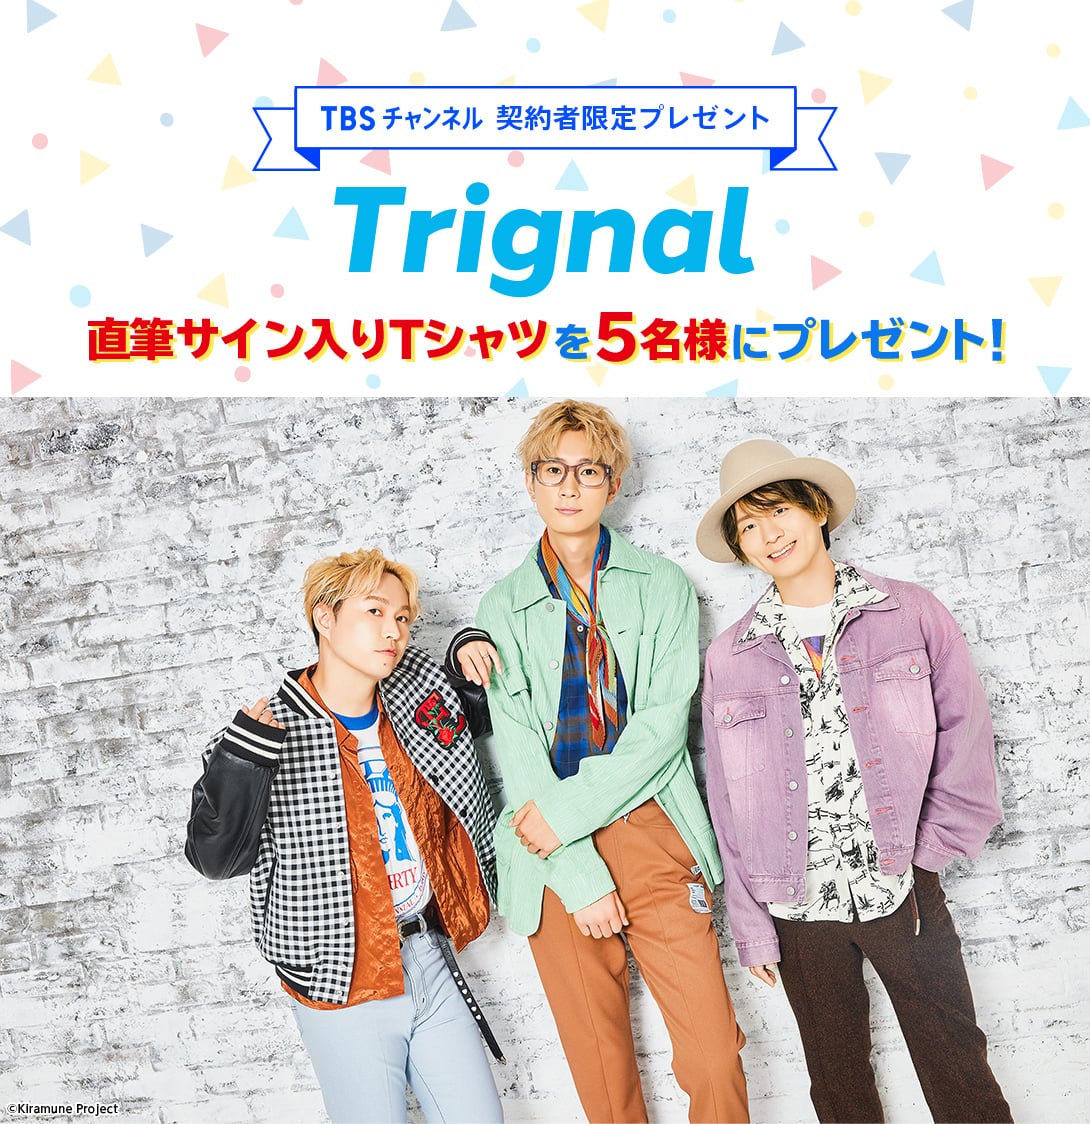 TBSチャンネル 契約者限定プレゼント Trignal 直筆サイン入りTシャツを5名様にプレゼント！